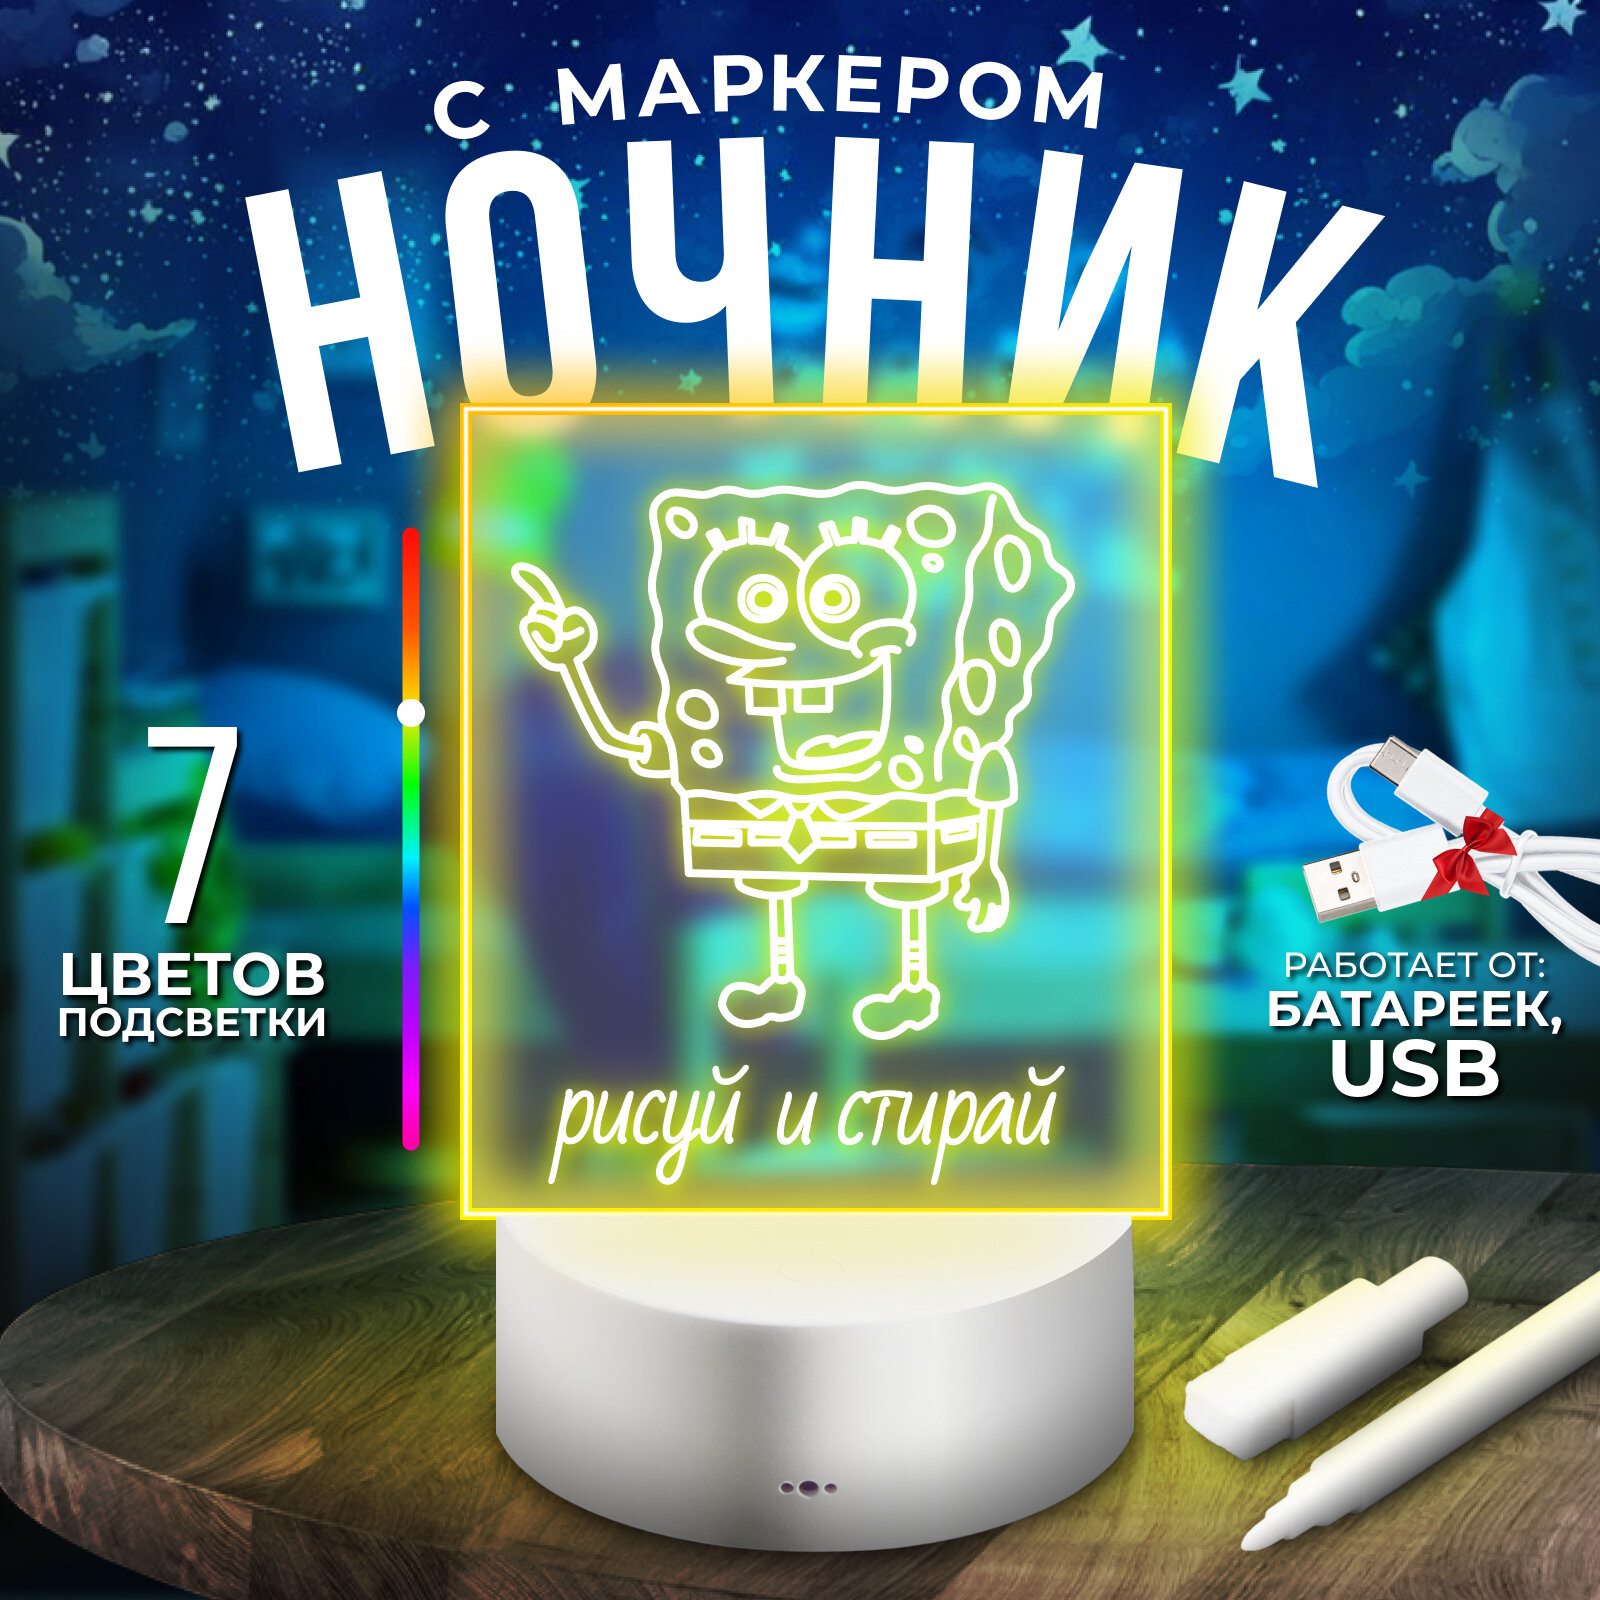 Ночник детский для заметок с маркером Manvayo 3D белый для взрослых в подарок светильник LED (с кабелем USB)